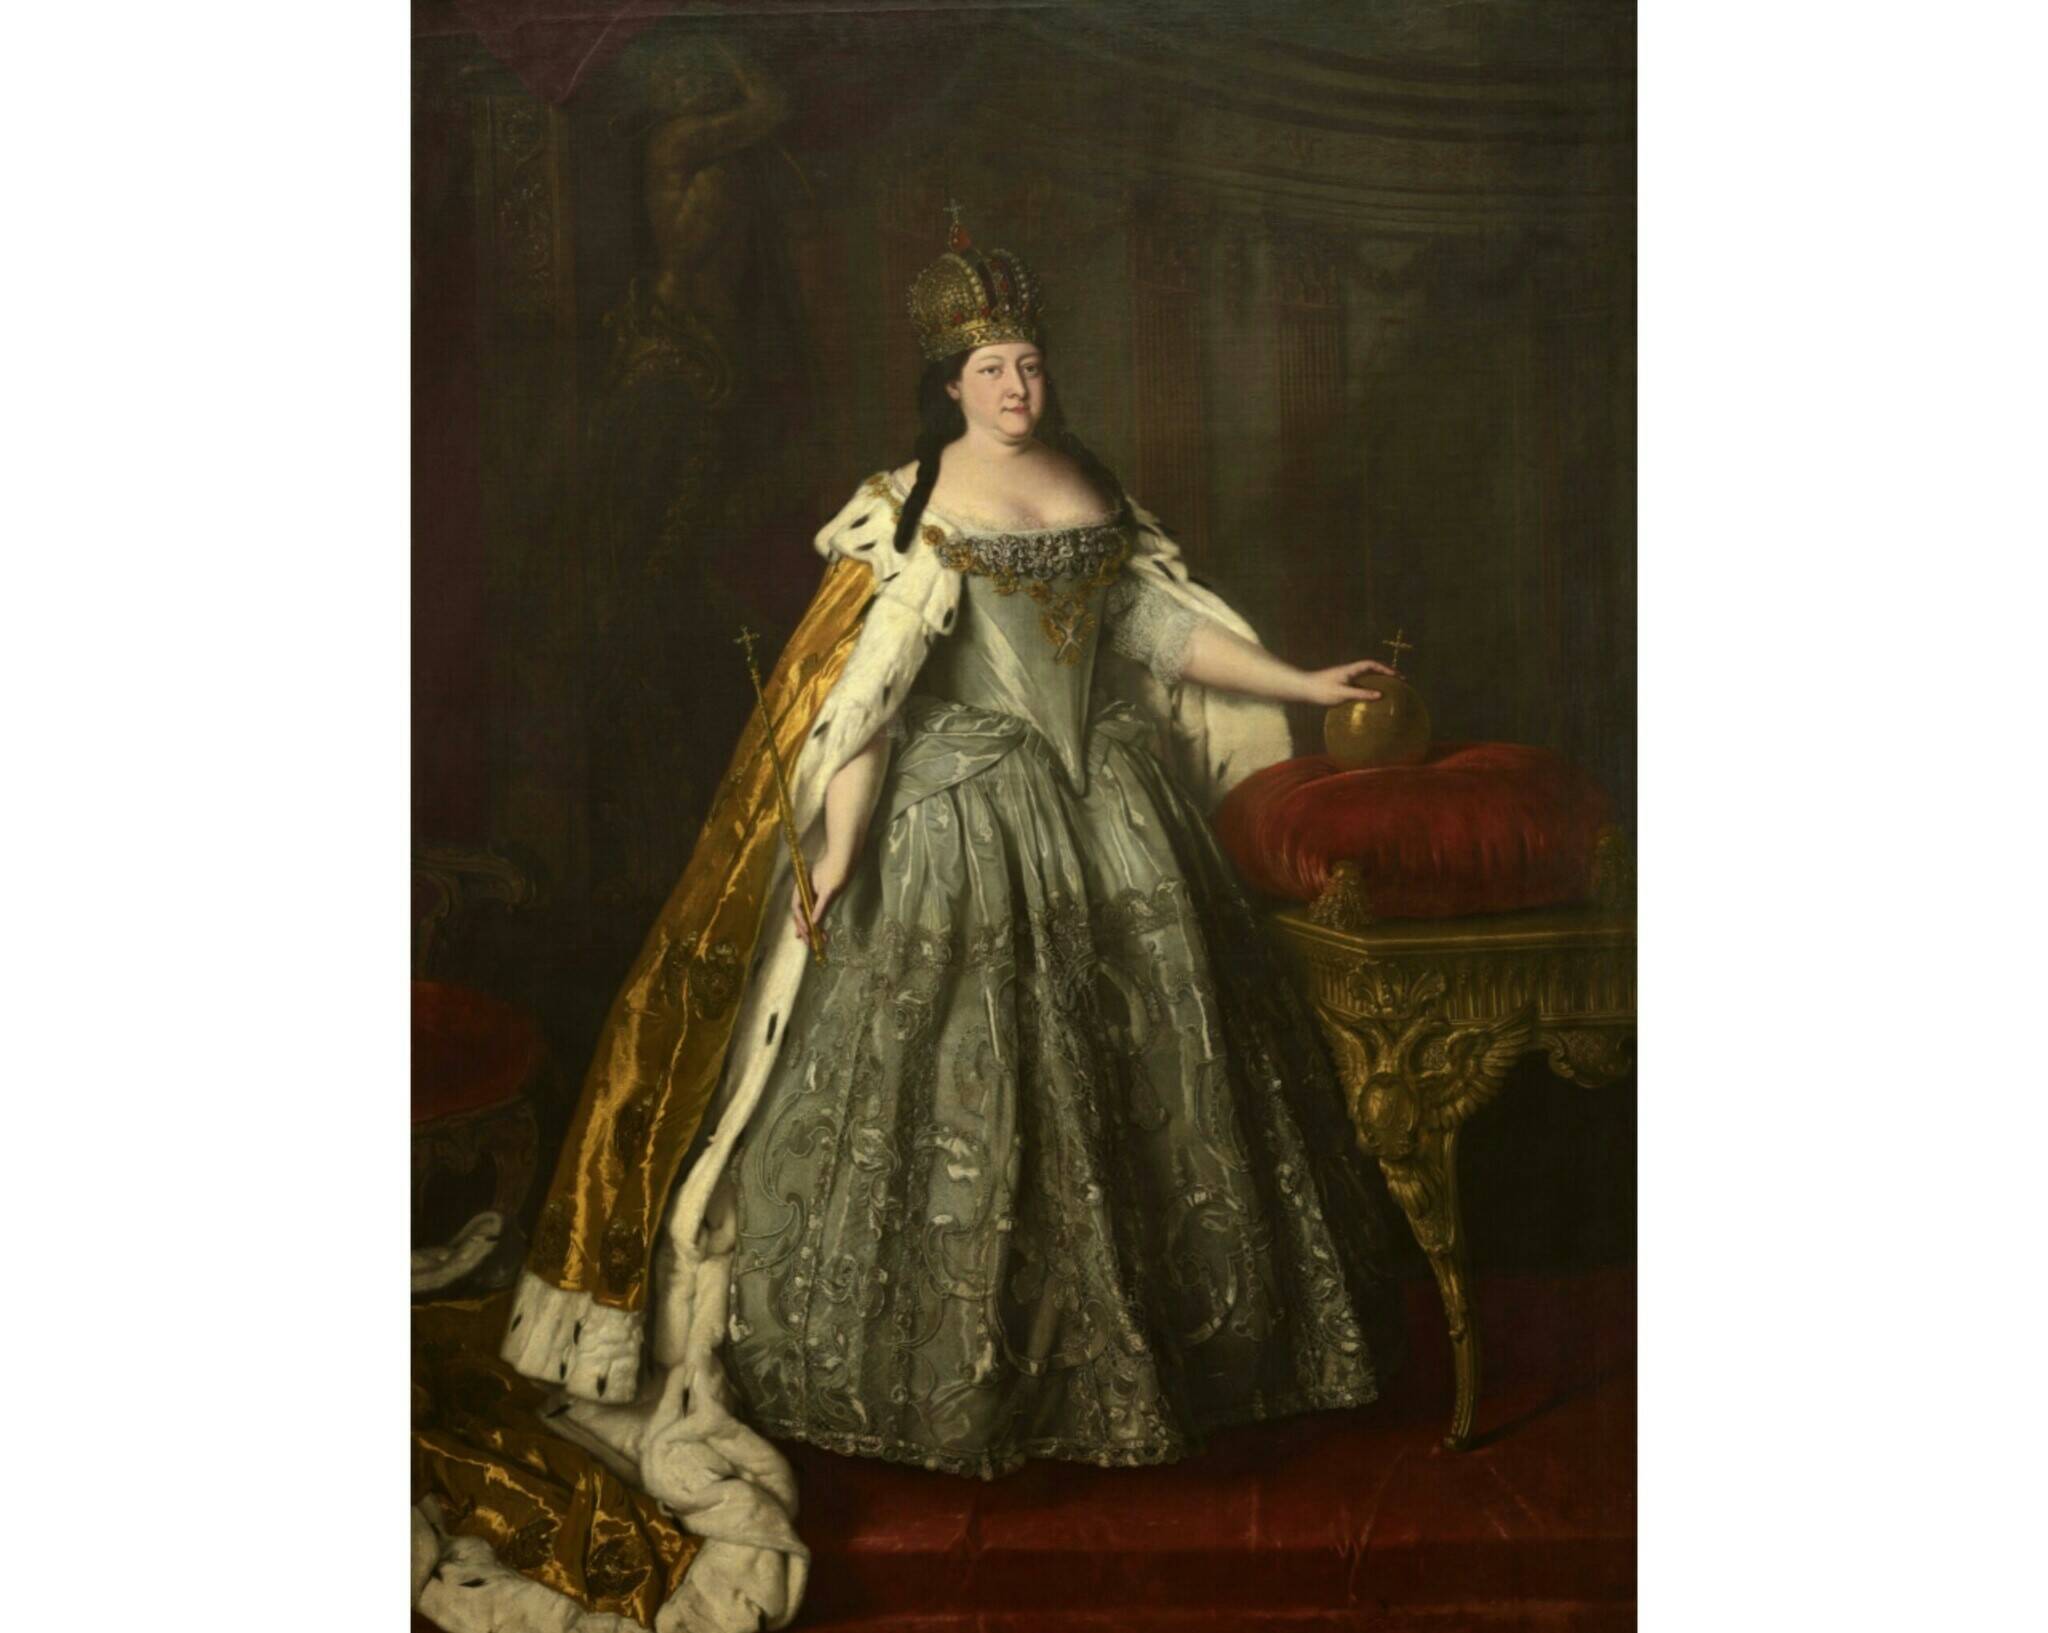 Луи Каравак. Портрет императрицы Анны Иоанновны, 1730 год. Из собрания Третьяковской галереи